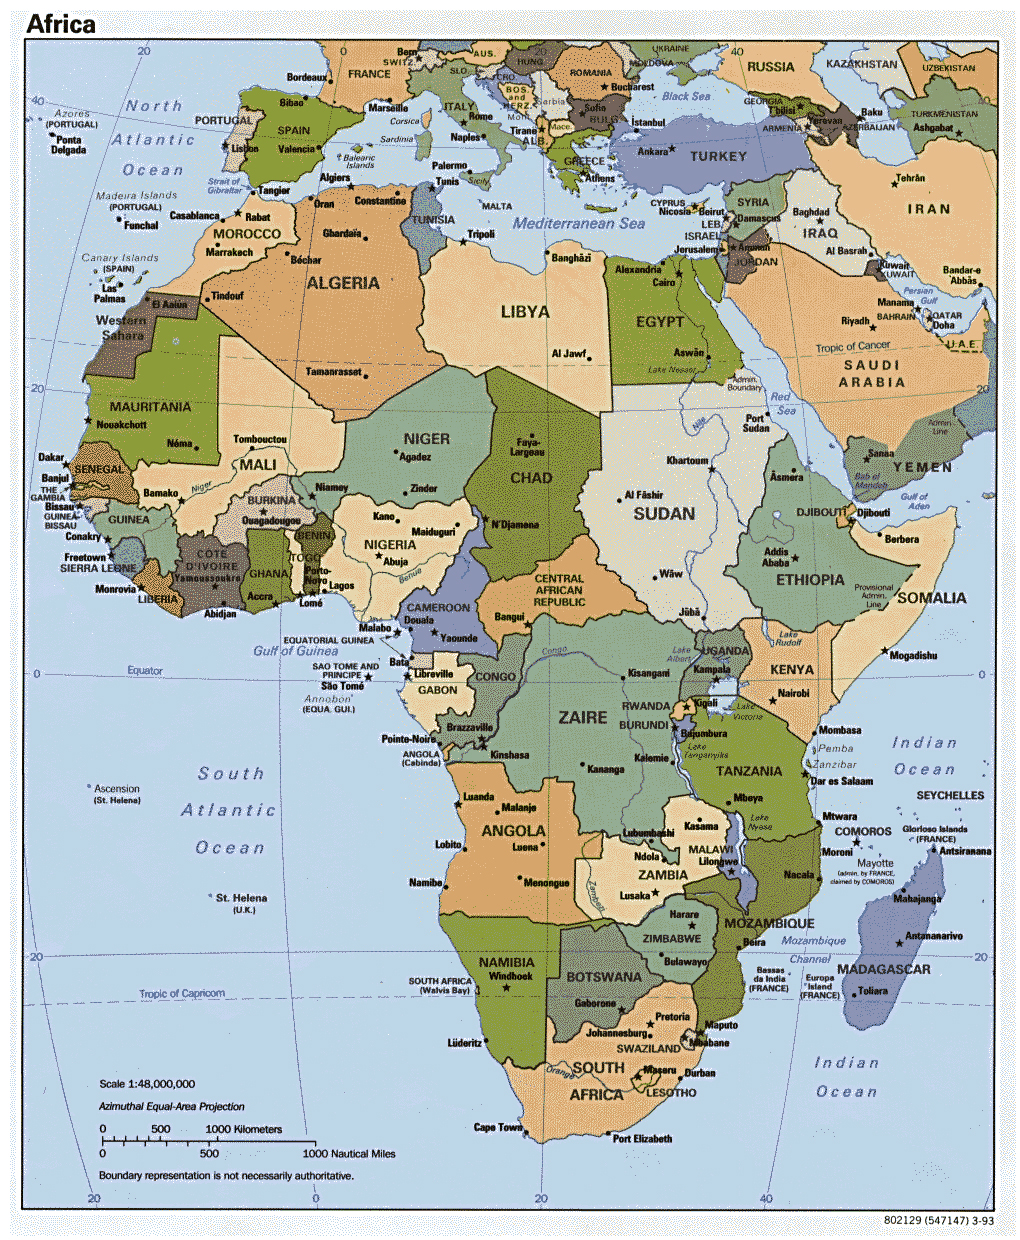 Mapa Político Detallada De África Con Las Principales Ciudades Y Capitales 1993 África 7976